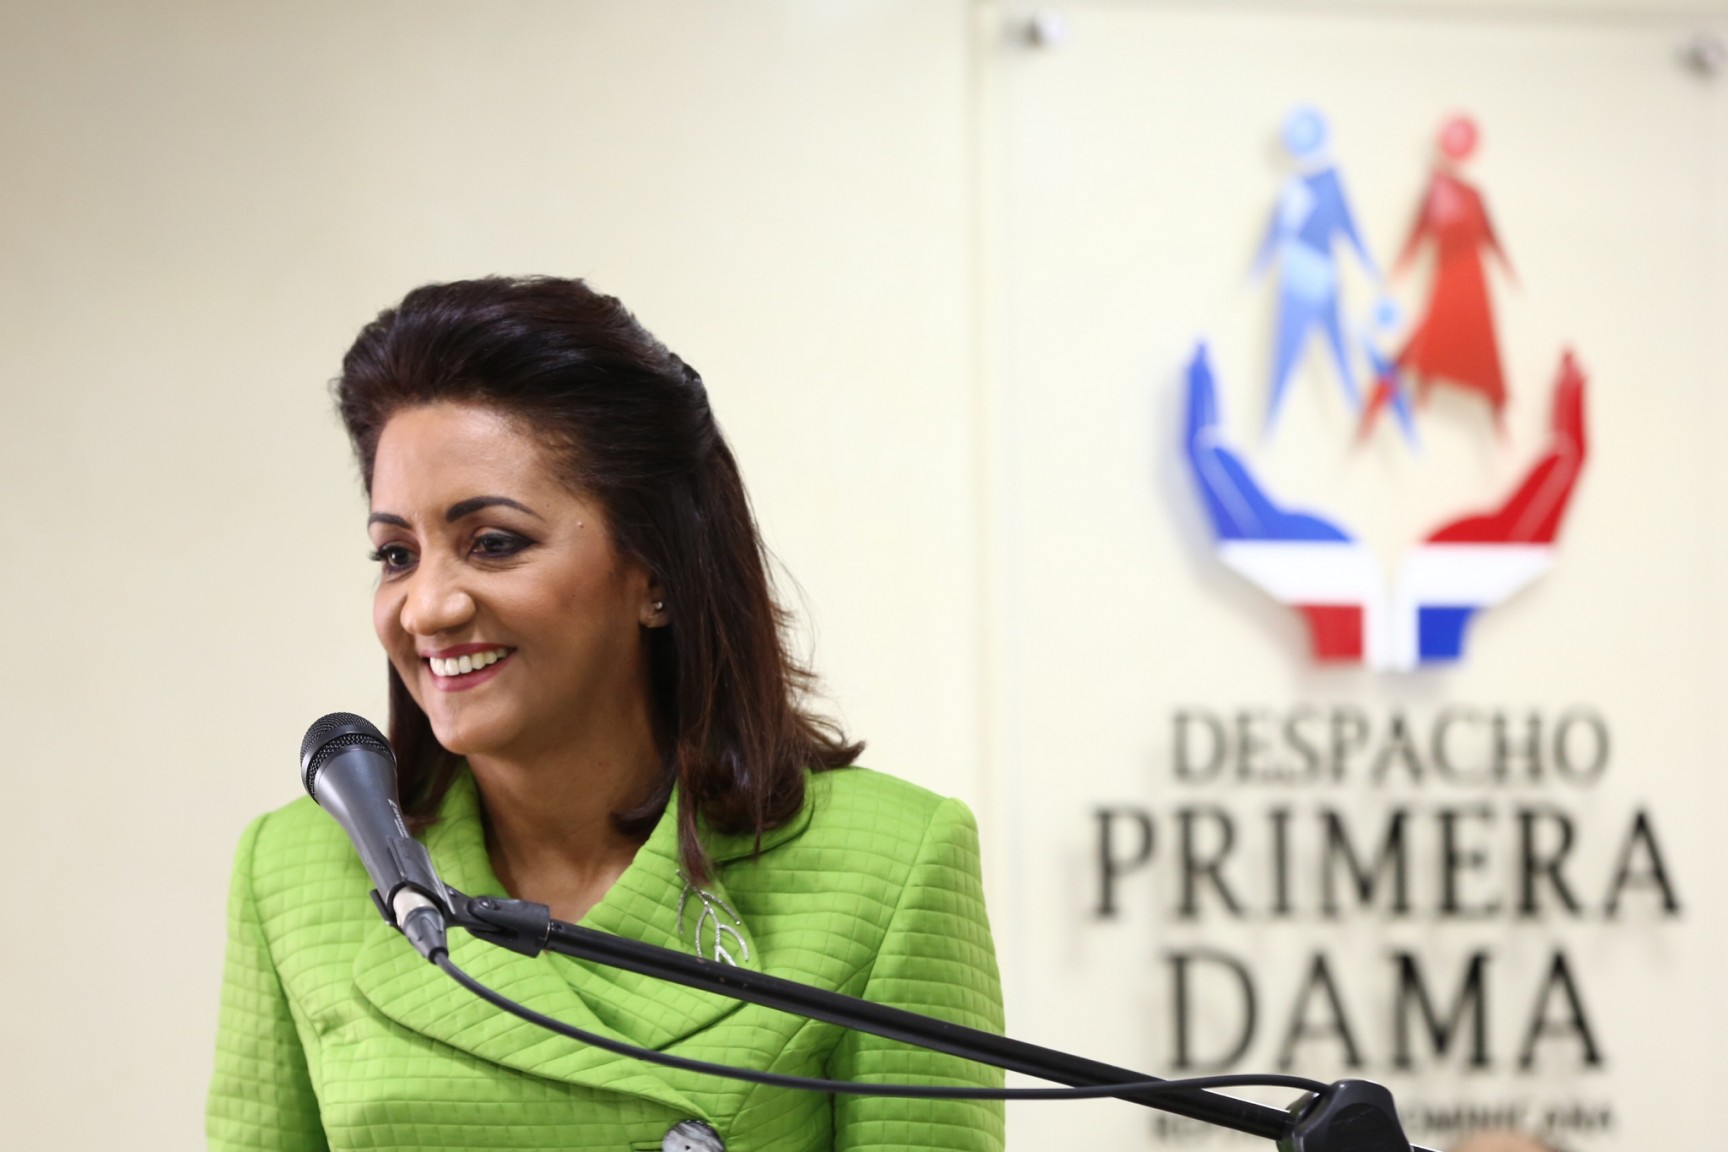 REPÚBLICA DOMINICANA: Despacho Primera Dama celebra 18 años; seis de ellos dirigidos por Cándida Montilla con 12 programas y más de 2 millones de beneficiarios